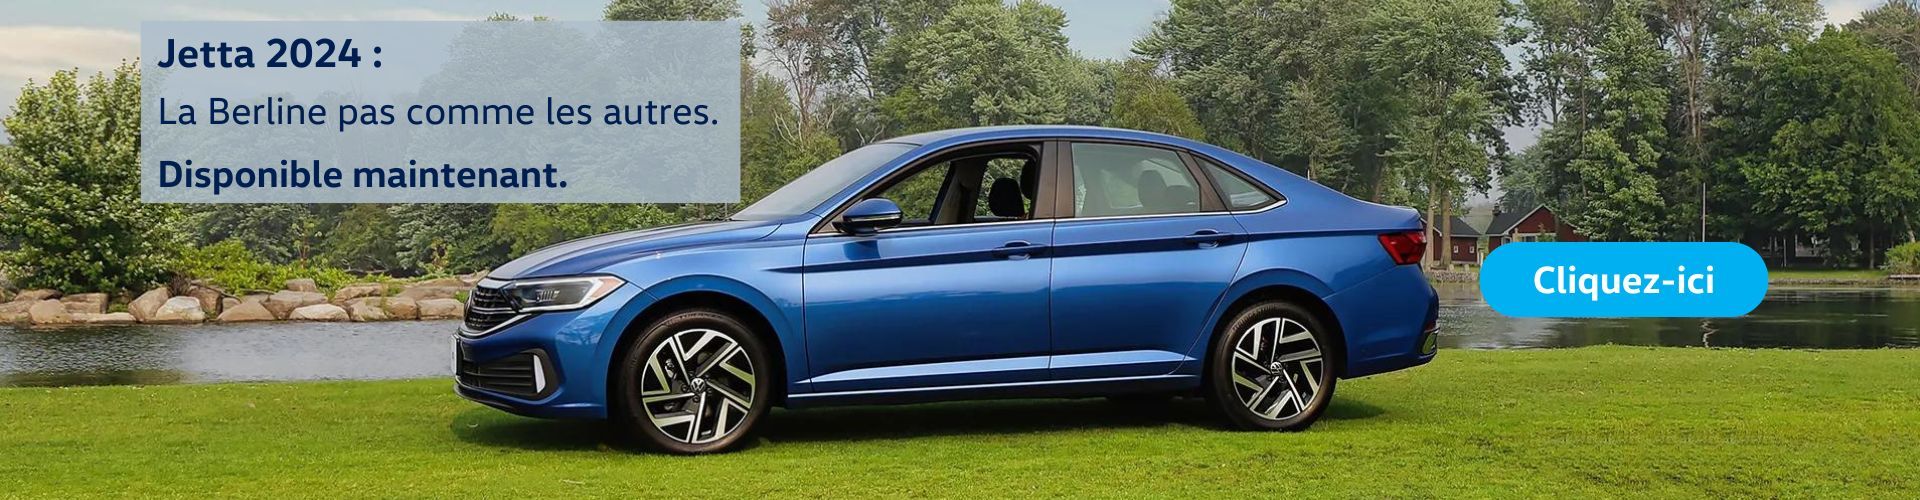 Excitante et accrocheuse, la nouvelle Jetta 2024 de Volkswagen apporte des sensations fortes de performance allemande